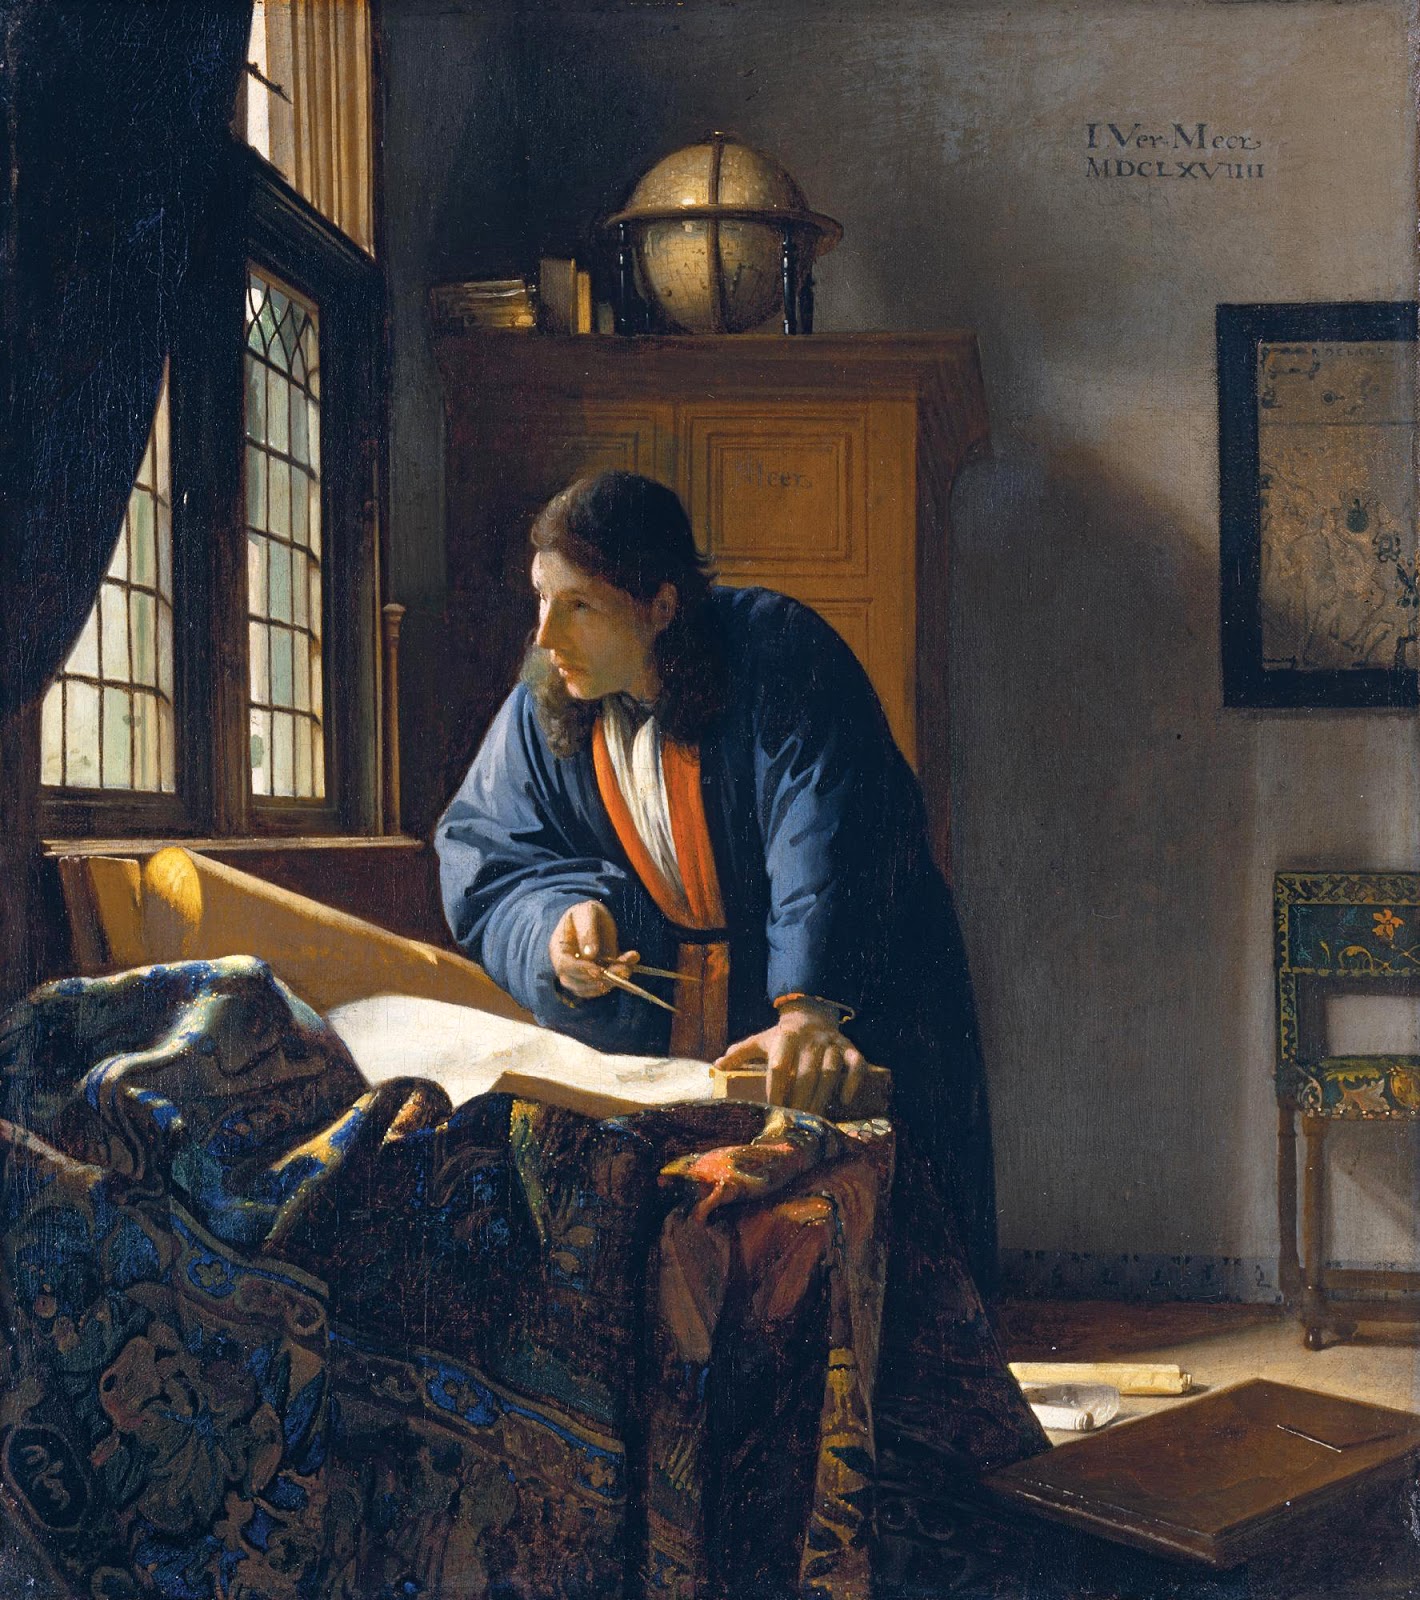 Johannes+Vermeer-1632-1675 (99).jpg